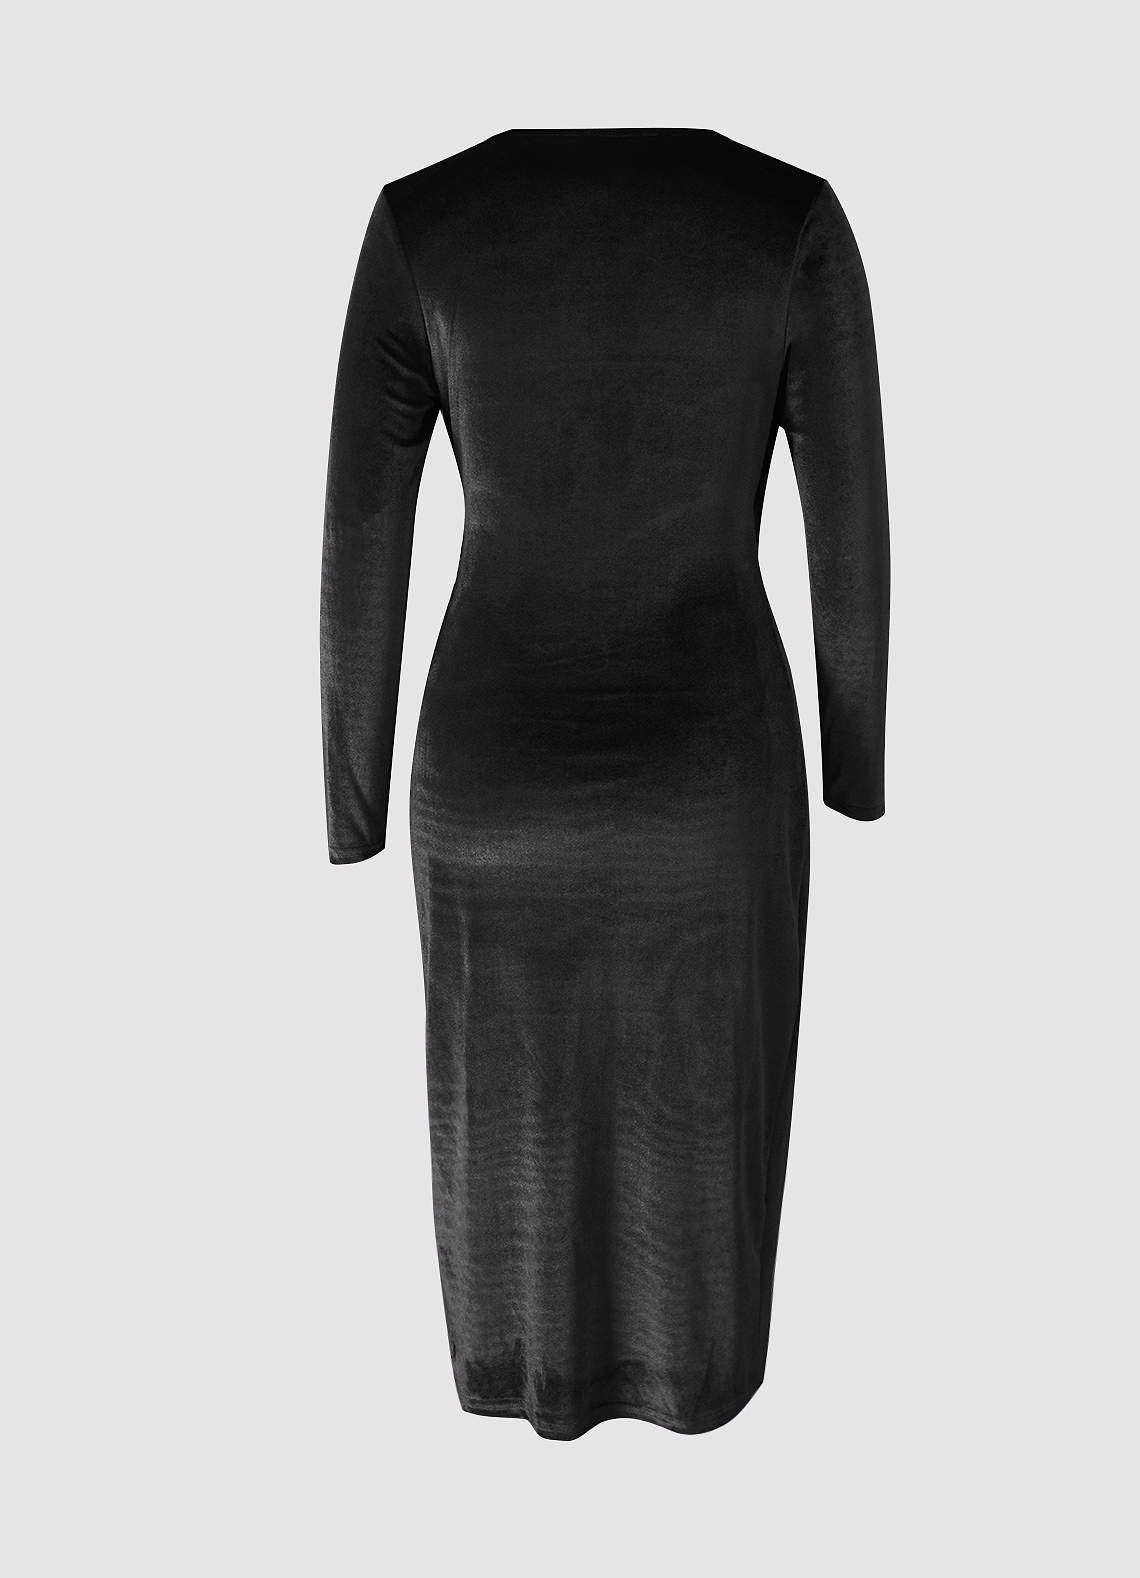 Going For Glamour Black Velvet Long Sleeve Midi Dress image1